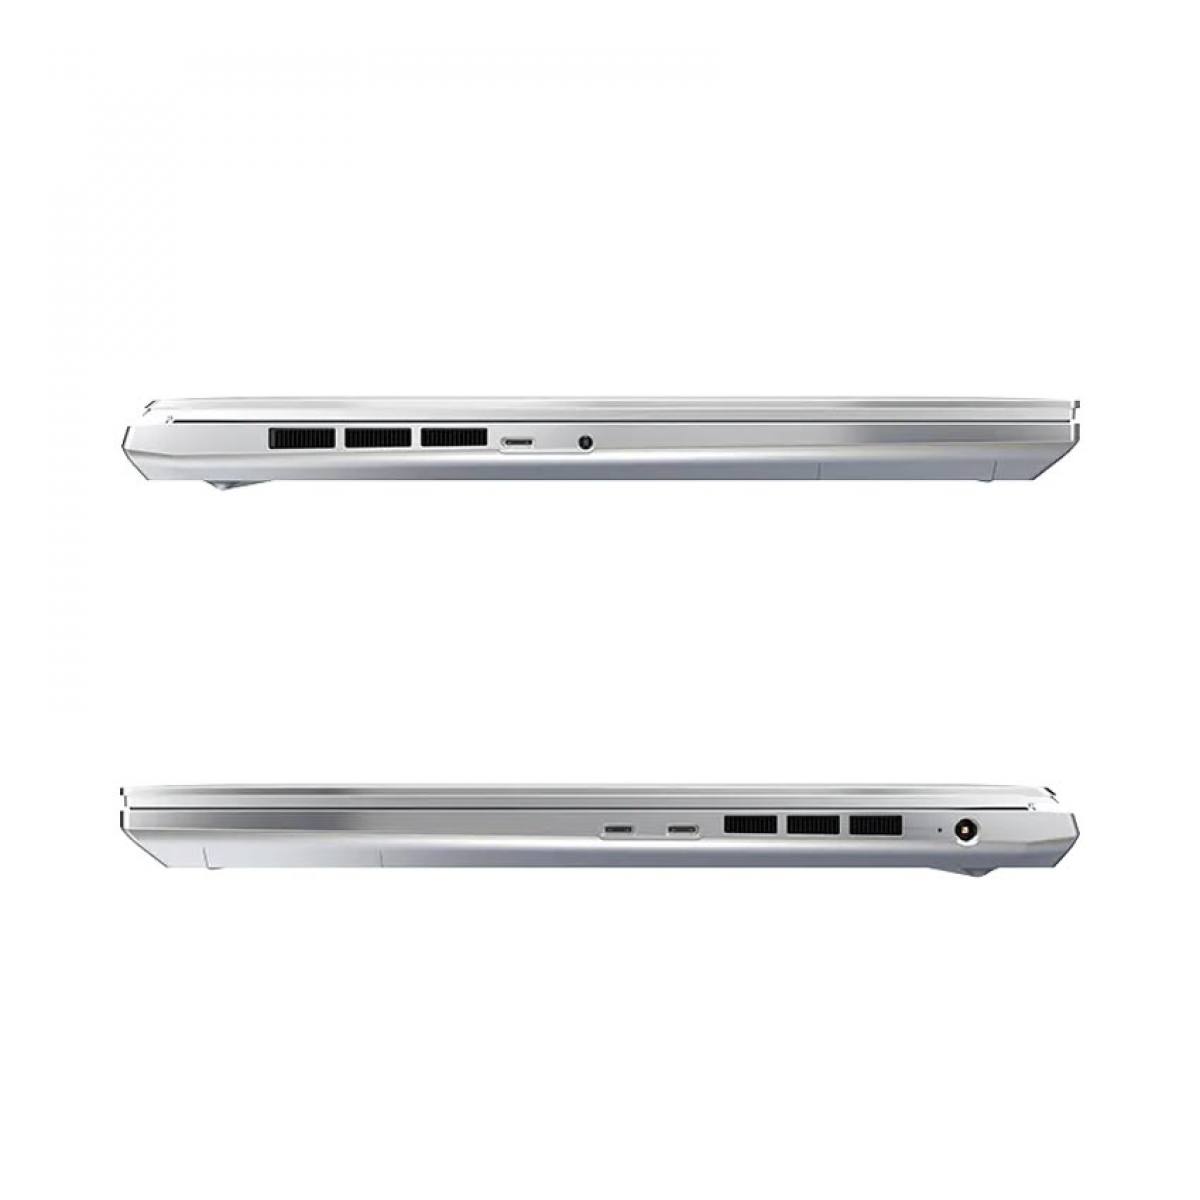 Laptop Gigabyte AERO 16 XE5-73VN938AH (i7 12700H | 16GBRam | 2TB SSD | RTX3070Ti 8G | 16.0 inch UHD+ AMOLED | Win 11 | Bạc)